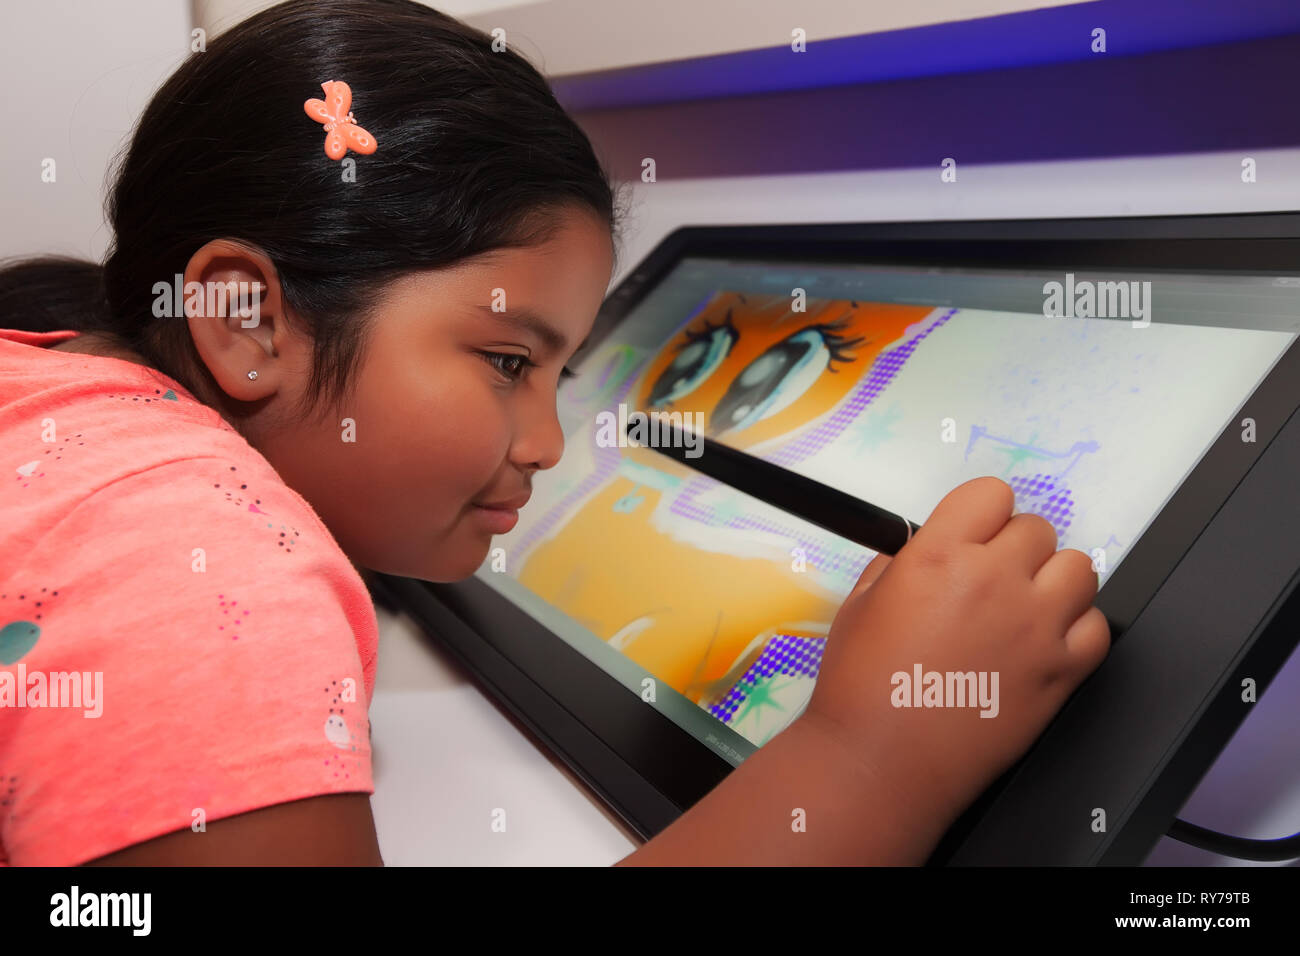 Jeune fille à l'aide d'un stylo numérique et tablette de dessin d'être créatif et de faire de l'art numérique dans une salle de classe. Banque D'Images